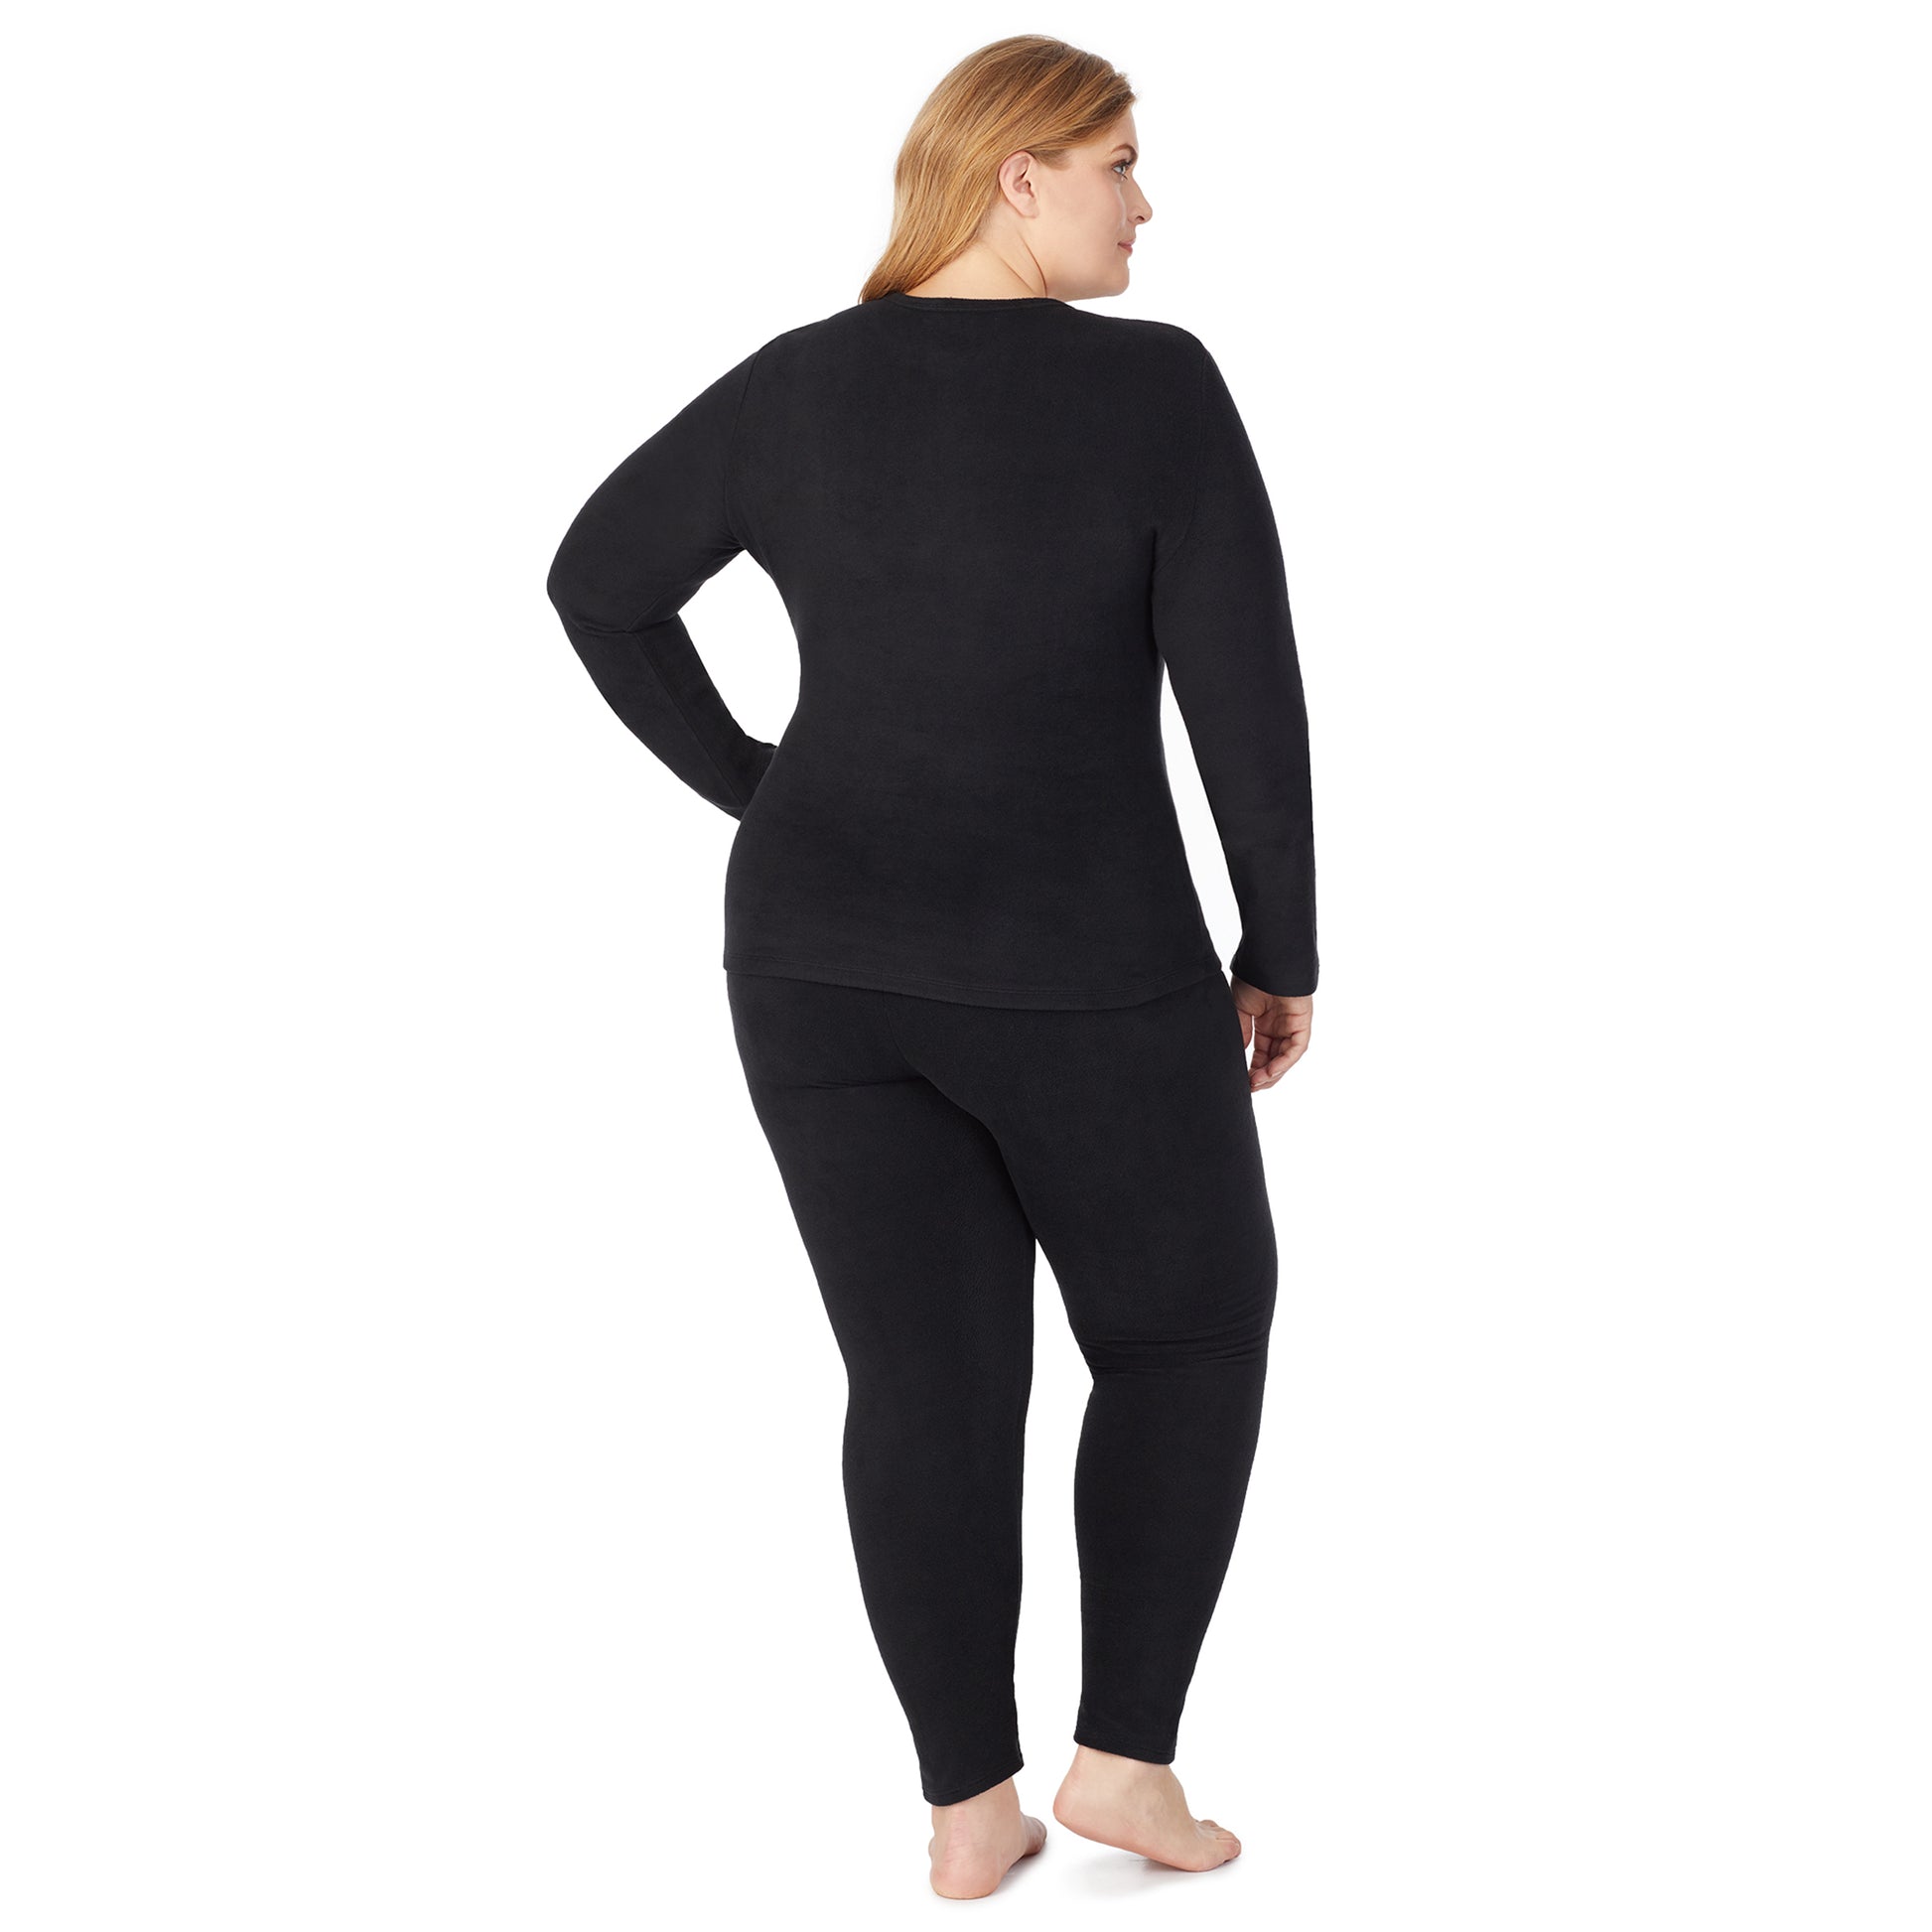 Black; Model is wearing size 1X. She is 5'9", Bust 38", Waist 36", Hips 48.5".@lower body of a lady wearing black legging